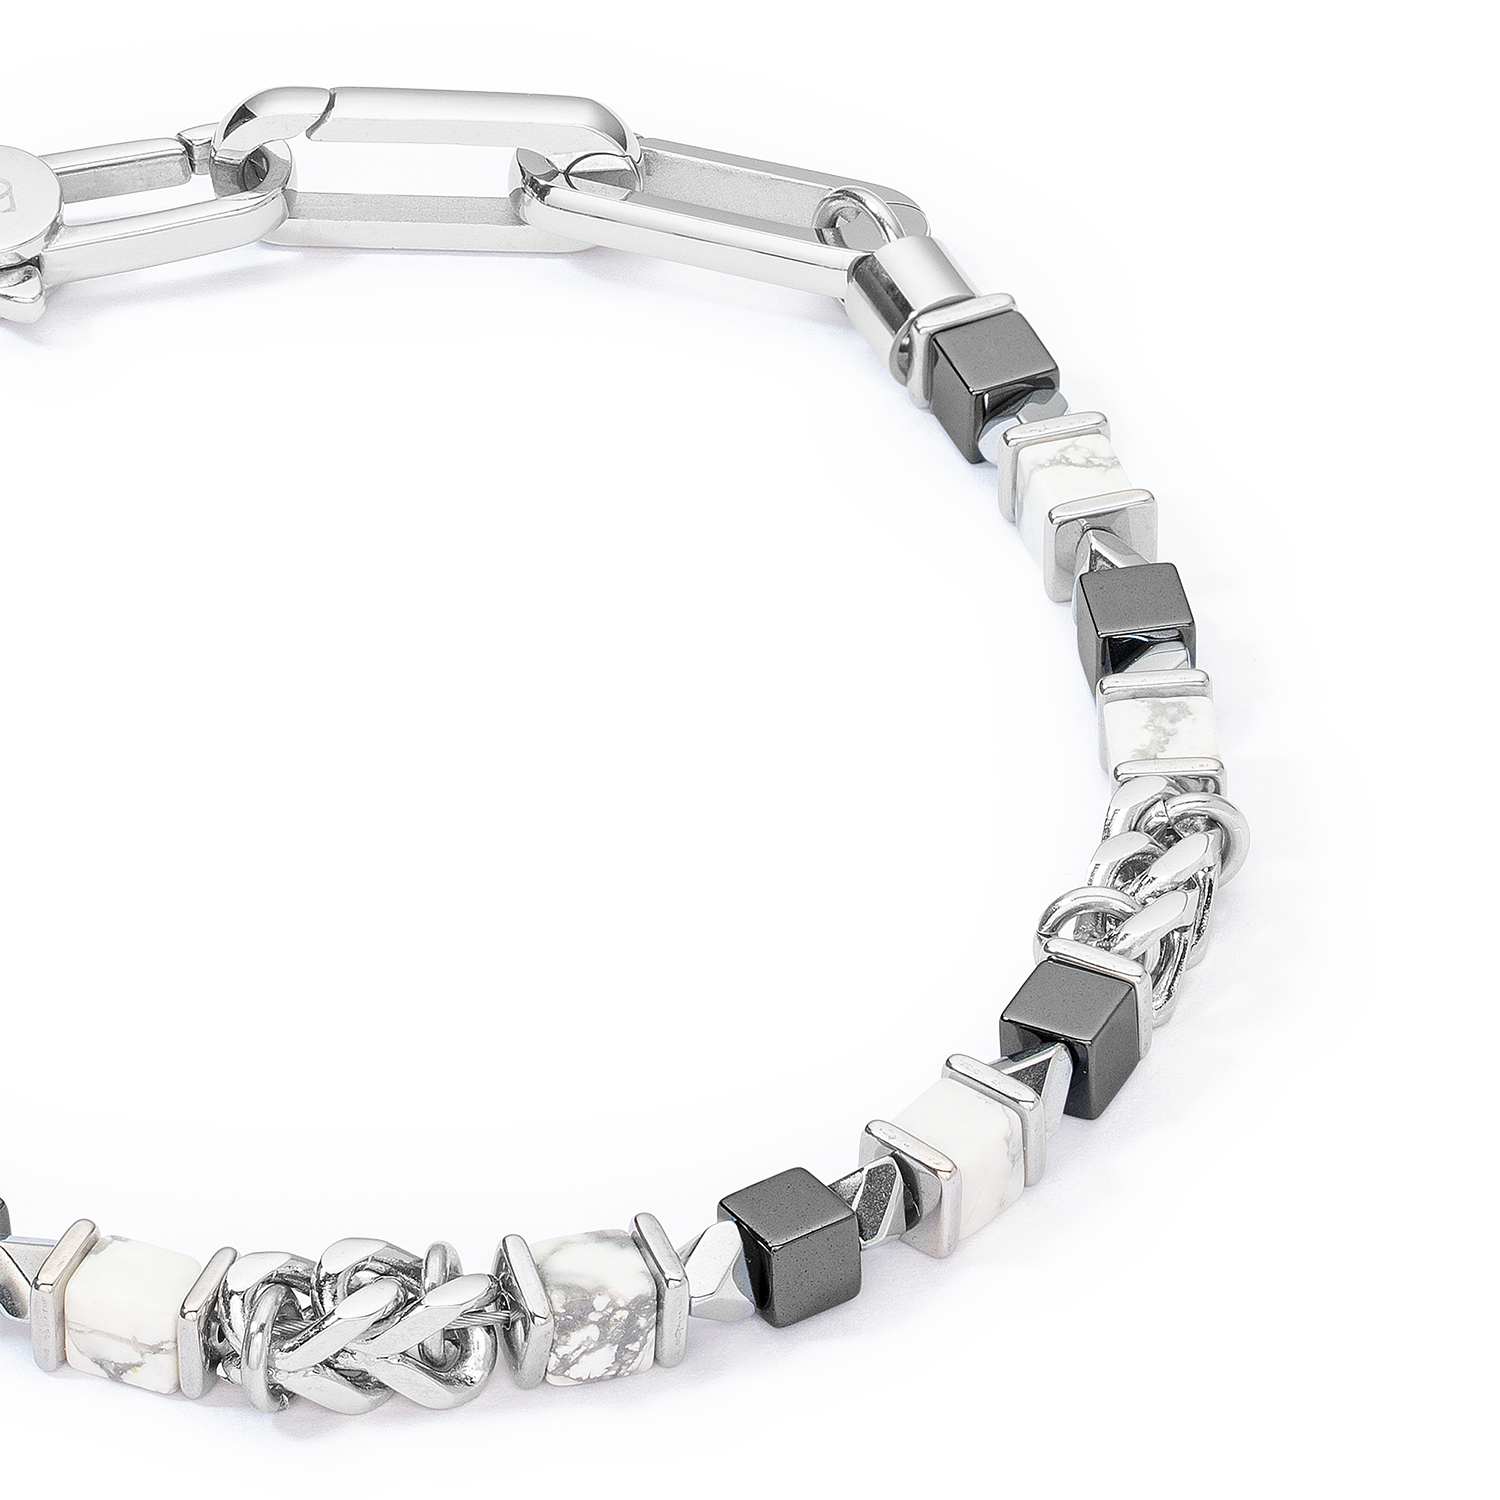 Unisex bracciale cubes & chain bianco